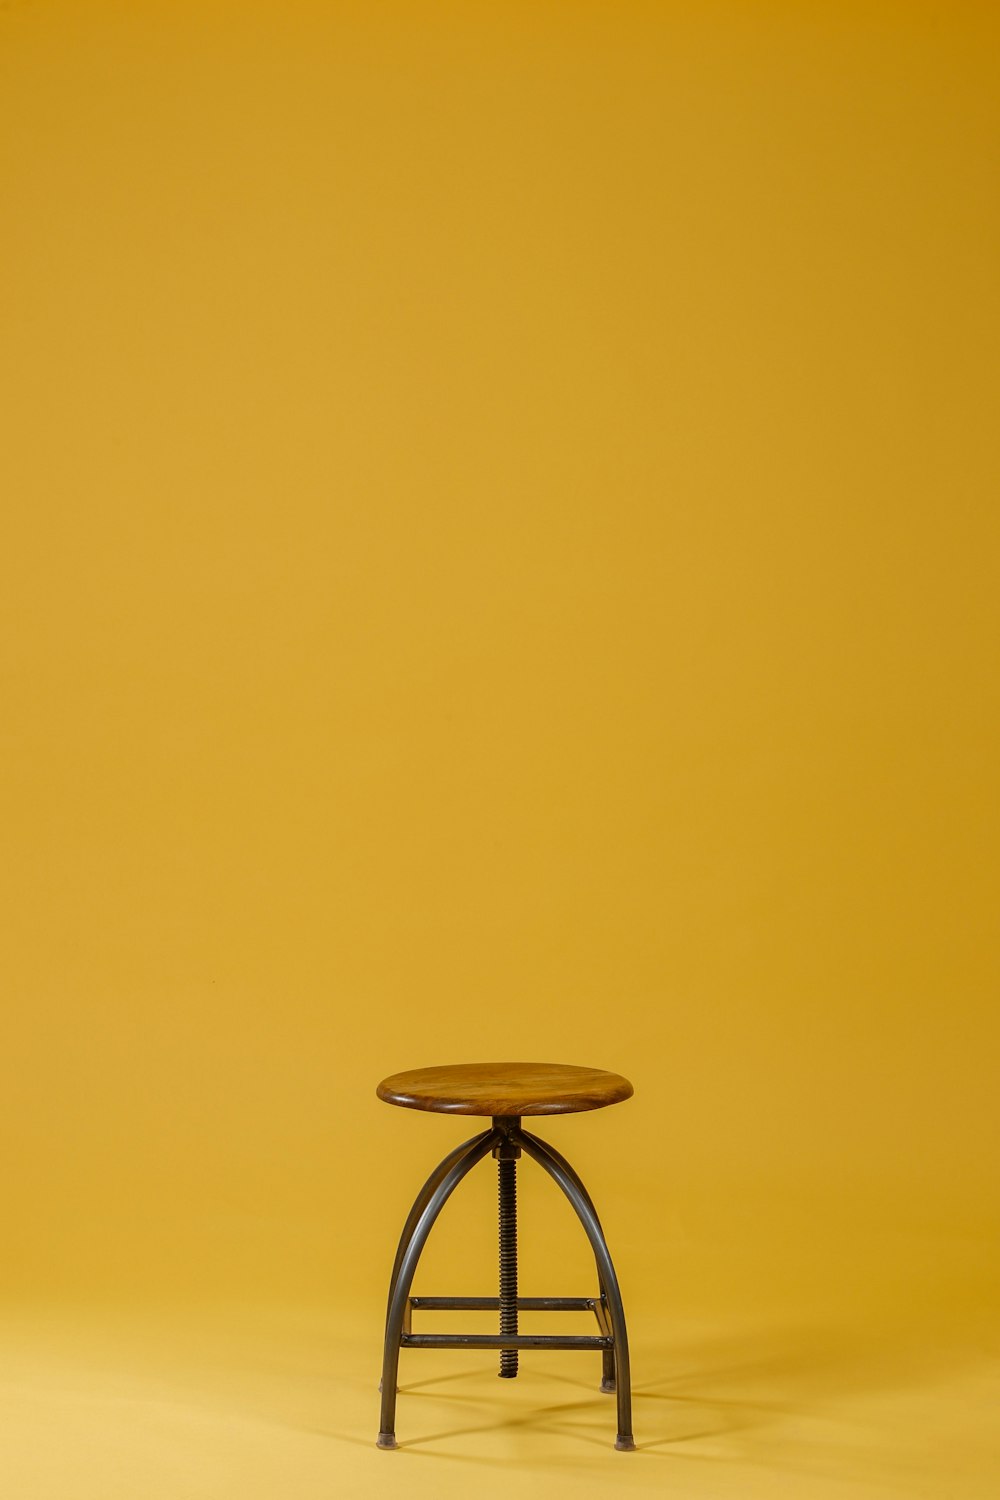 노란색 배경에 둥근 갈색 나무 상판과 검은 색베이스 의자